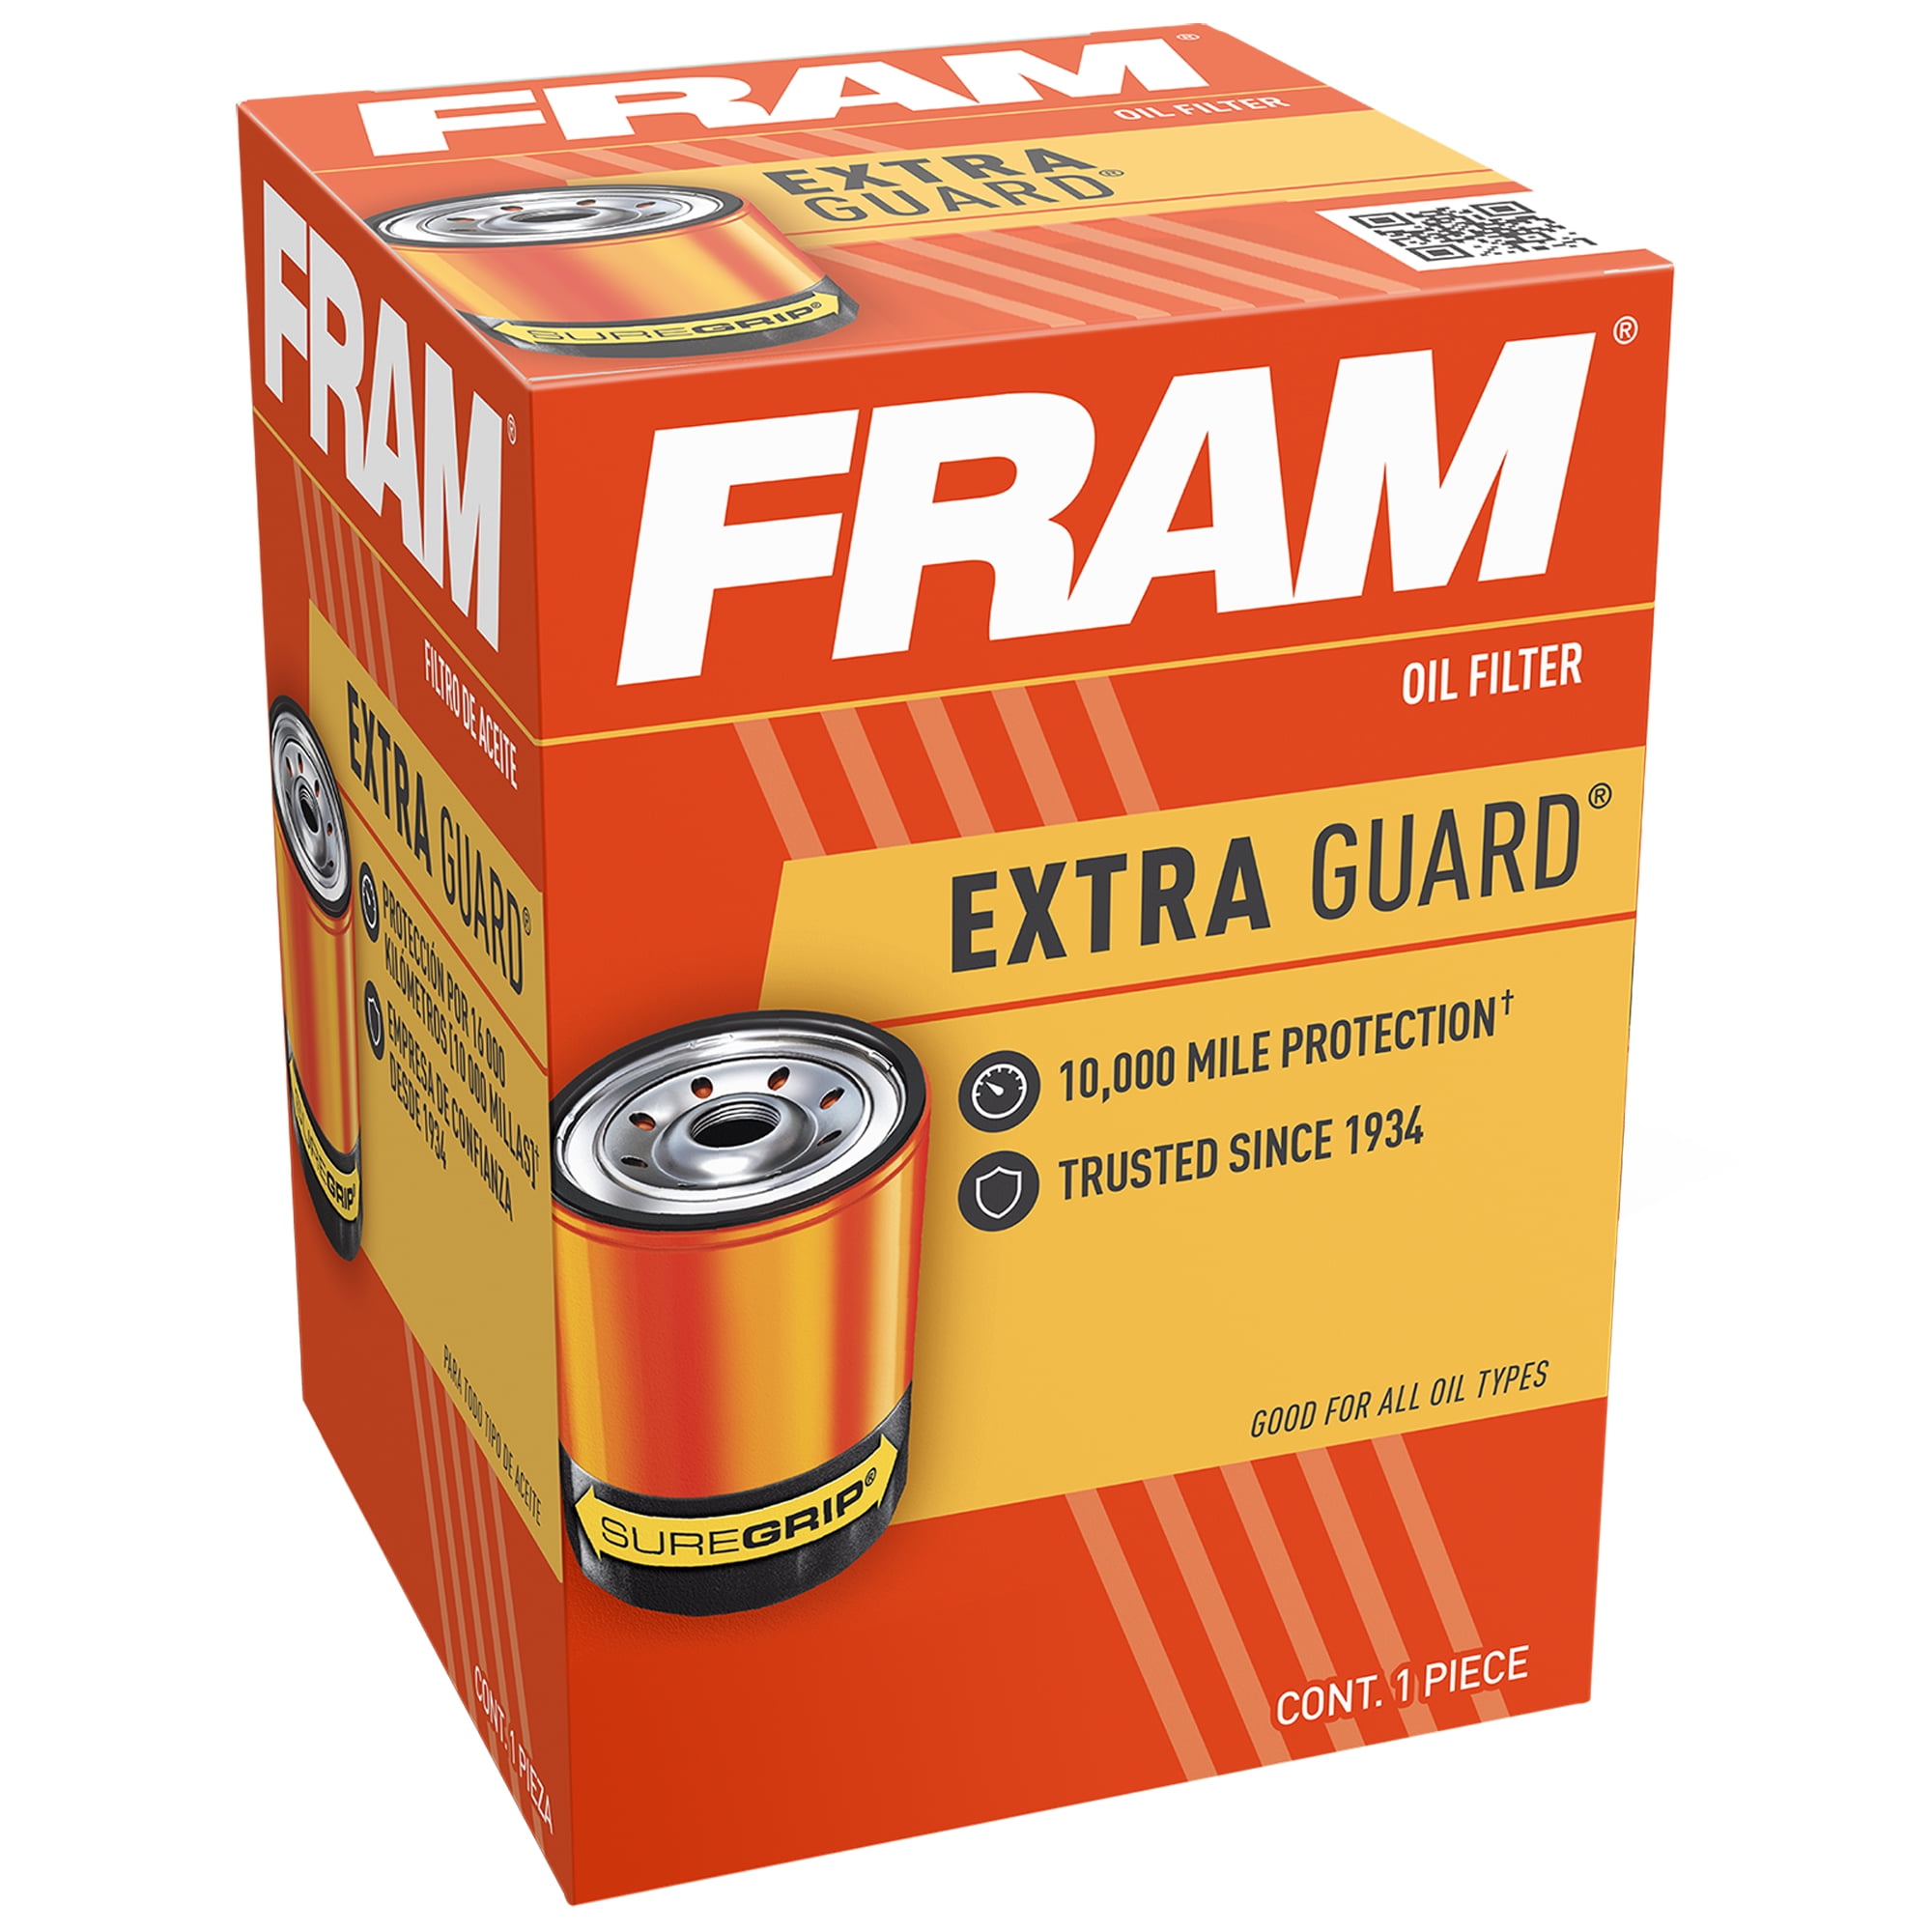 Fram PH2951 Oil Filter